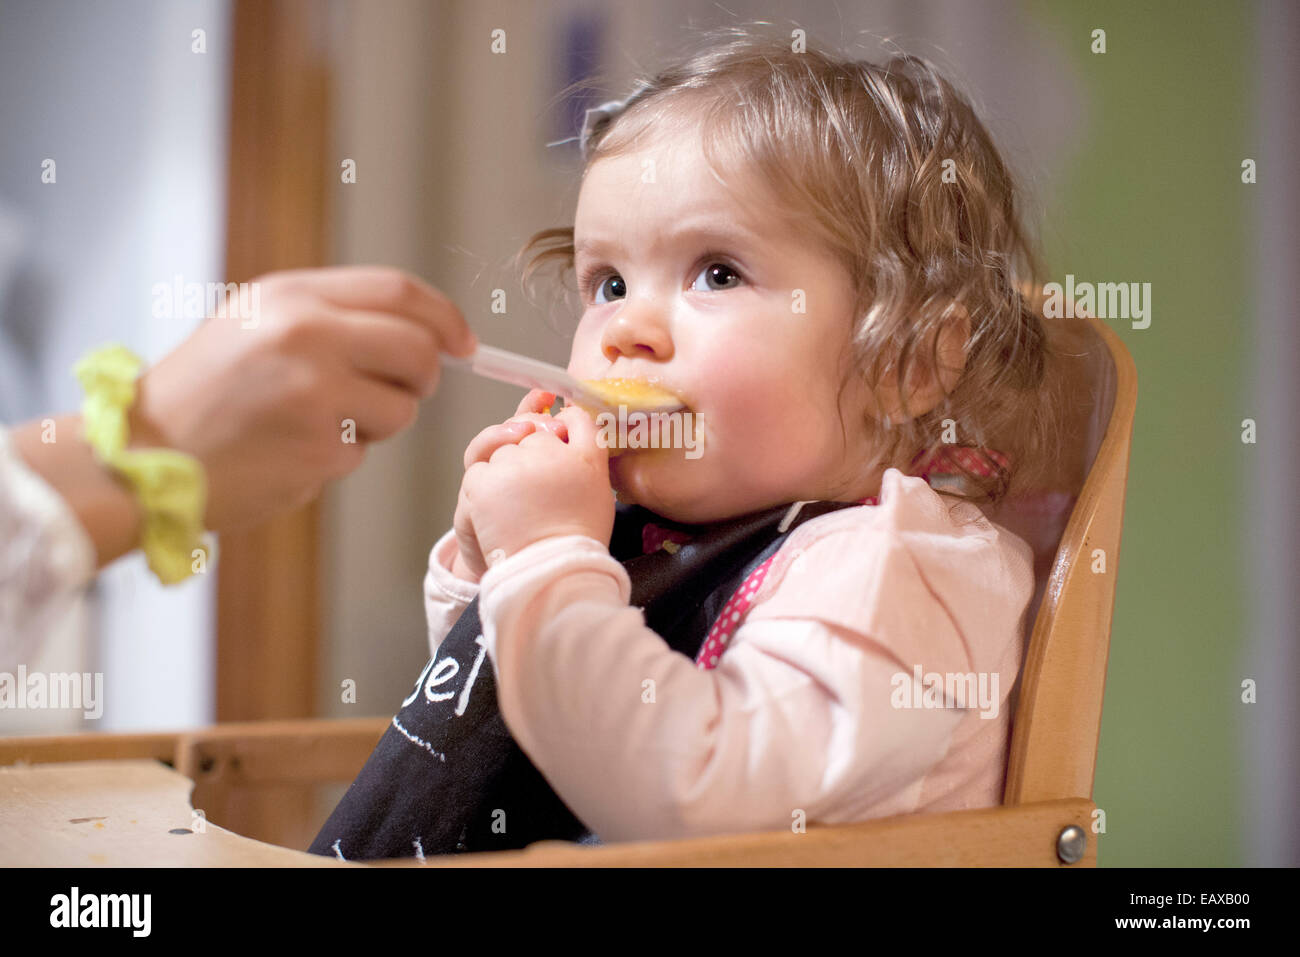 Baby Girl être nourris par parent, cropped Banque D'Images